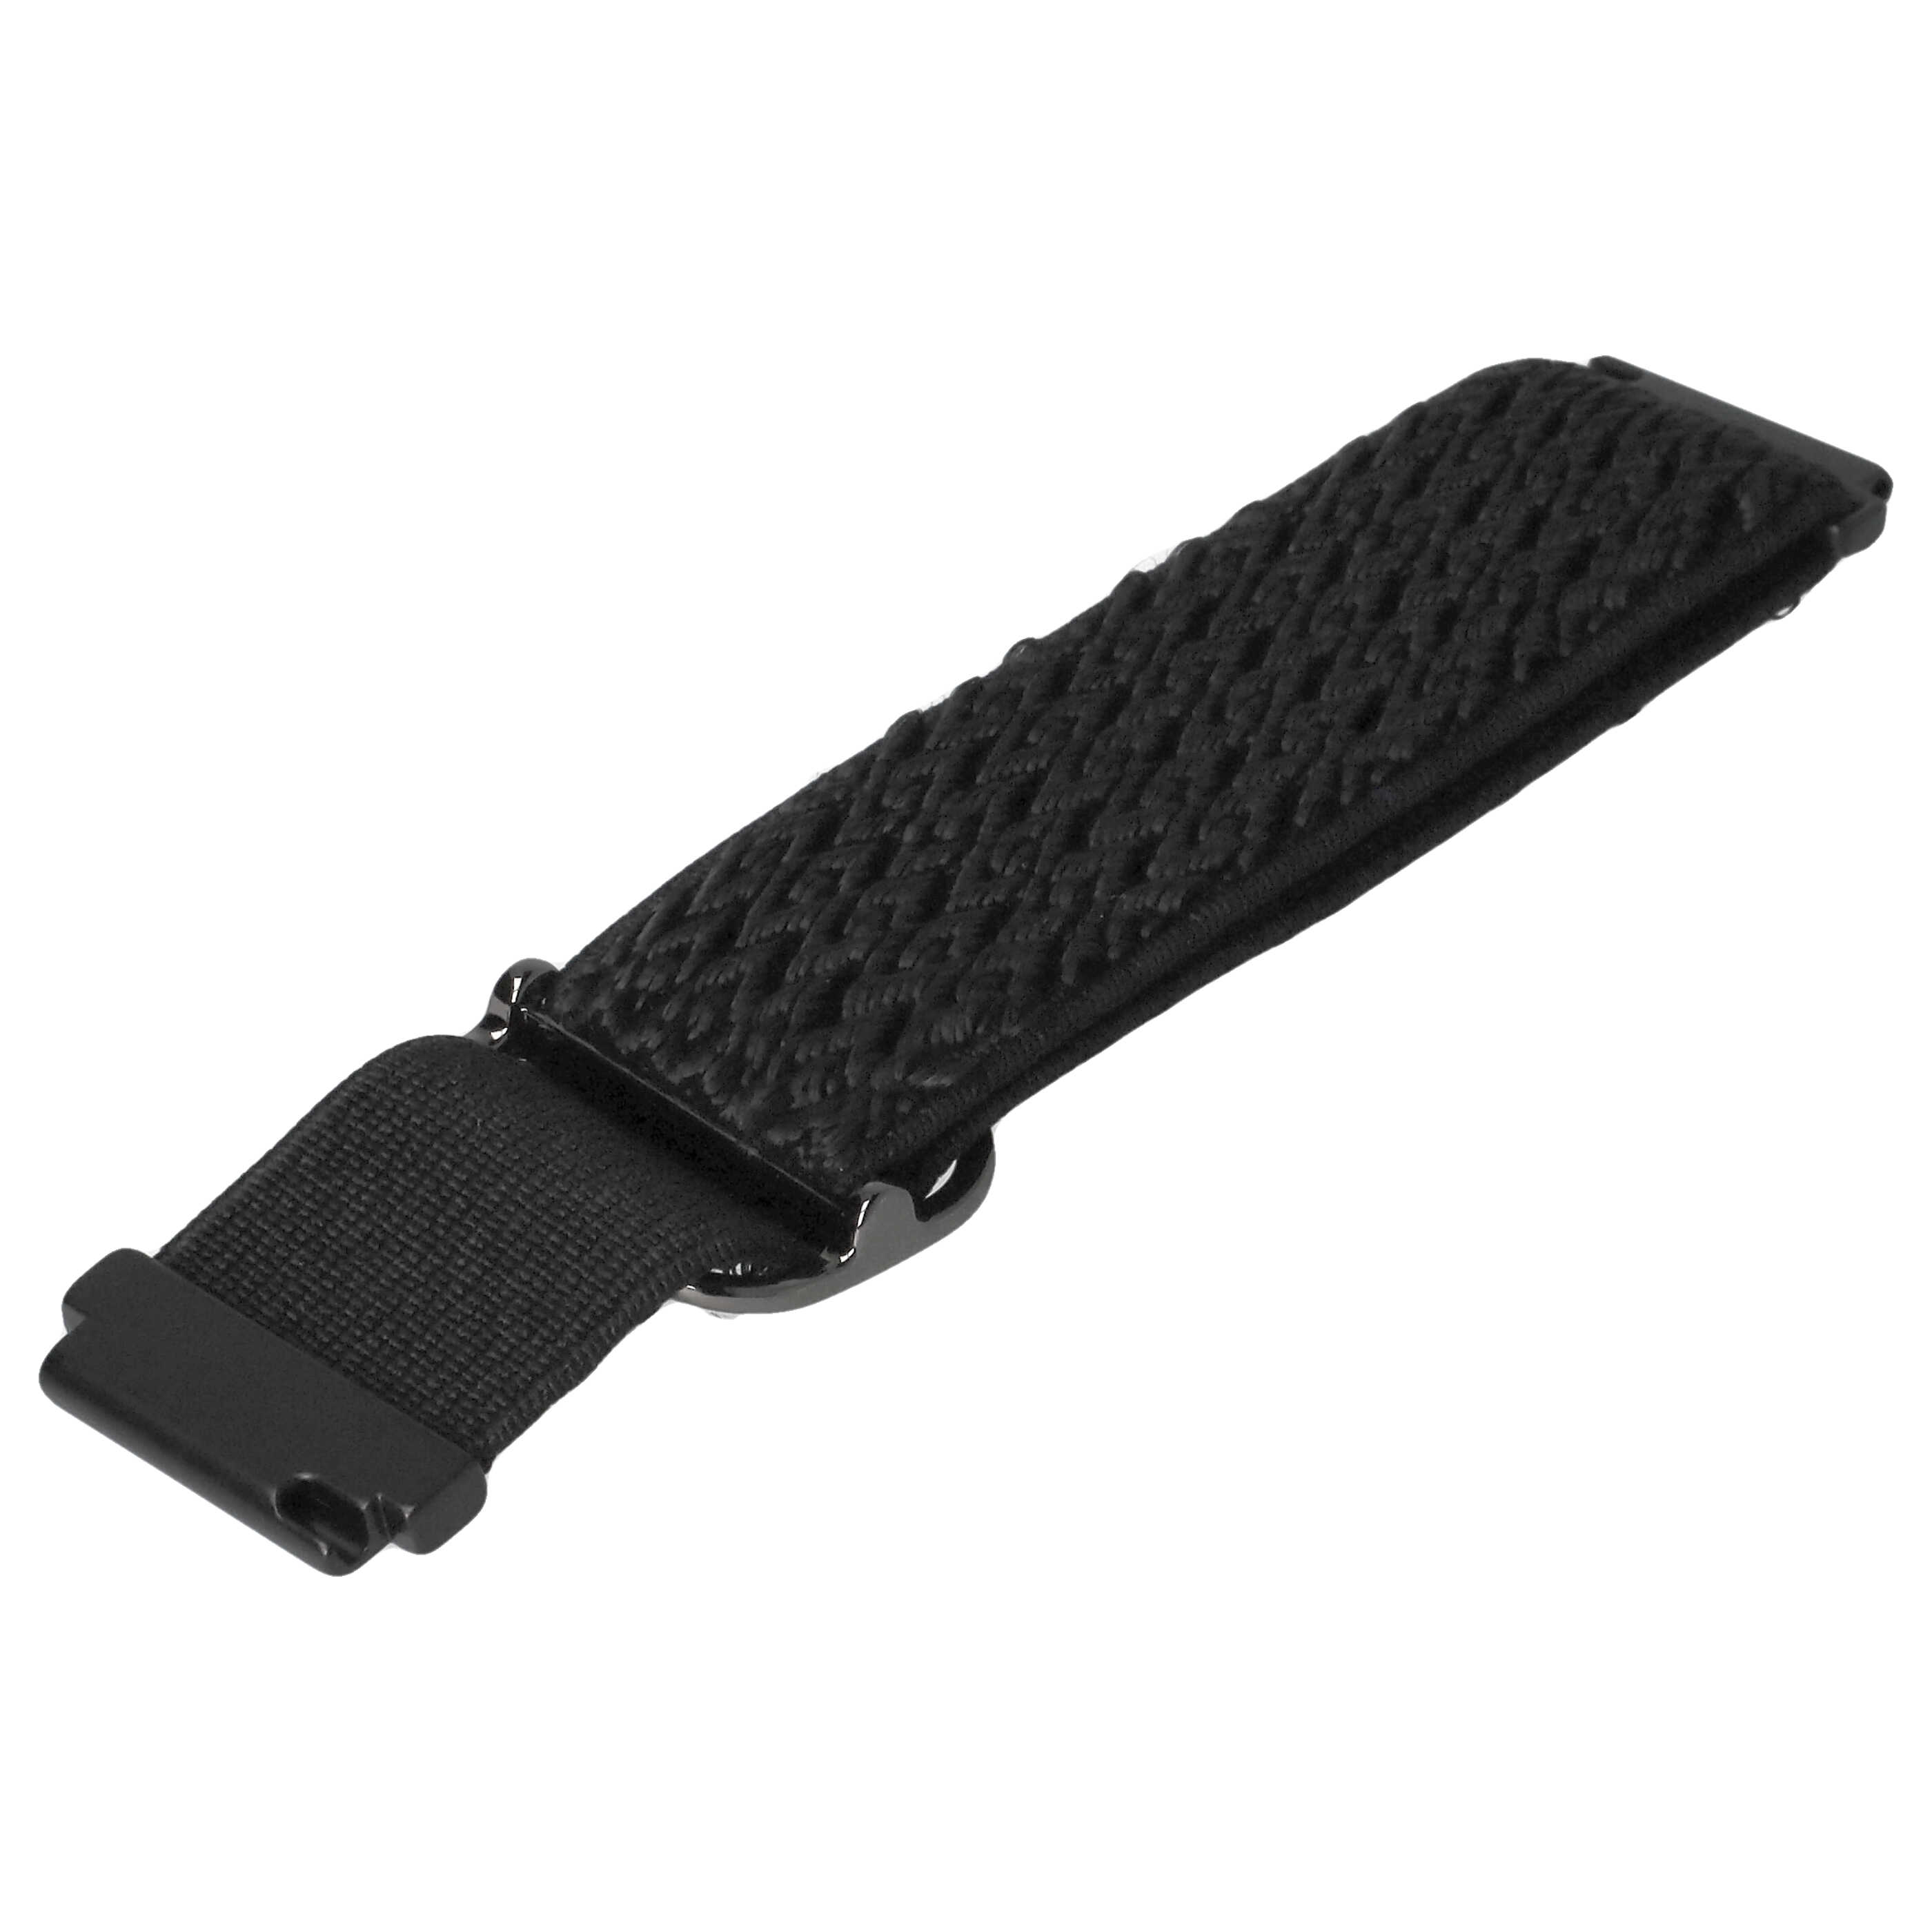 Schnellspanner Armband für Samsung Galaxy Smartwatch - 21 x 2,2 cm, Nylon, schwarz